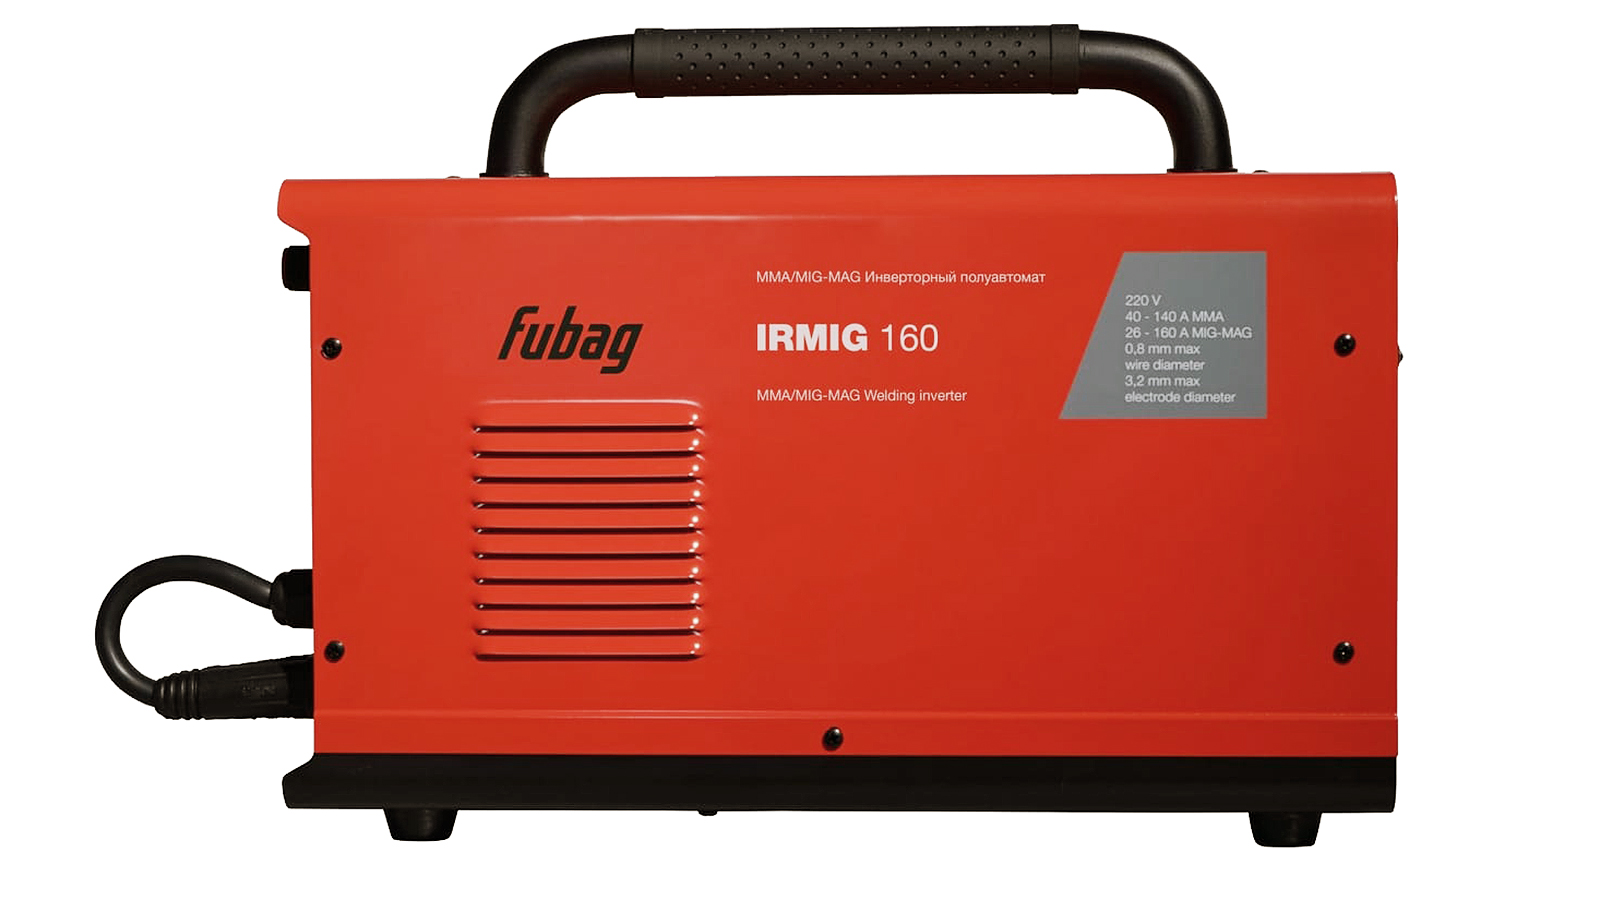 Аппарат сварочный Fubag IRMIG 160 инвертор полуавтомат фотография №3